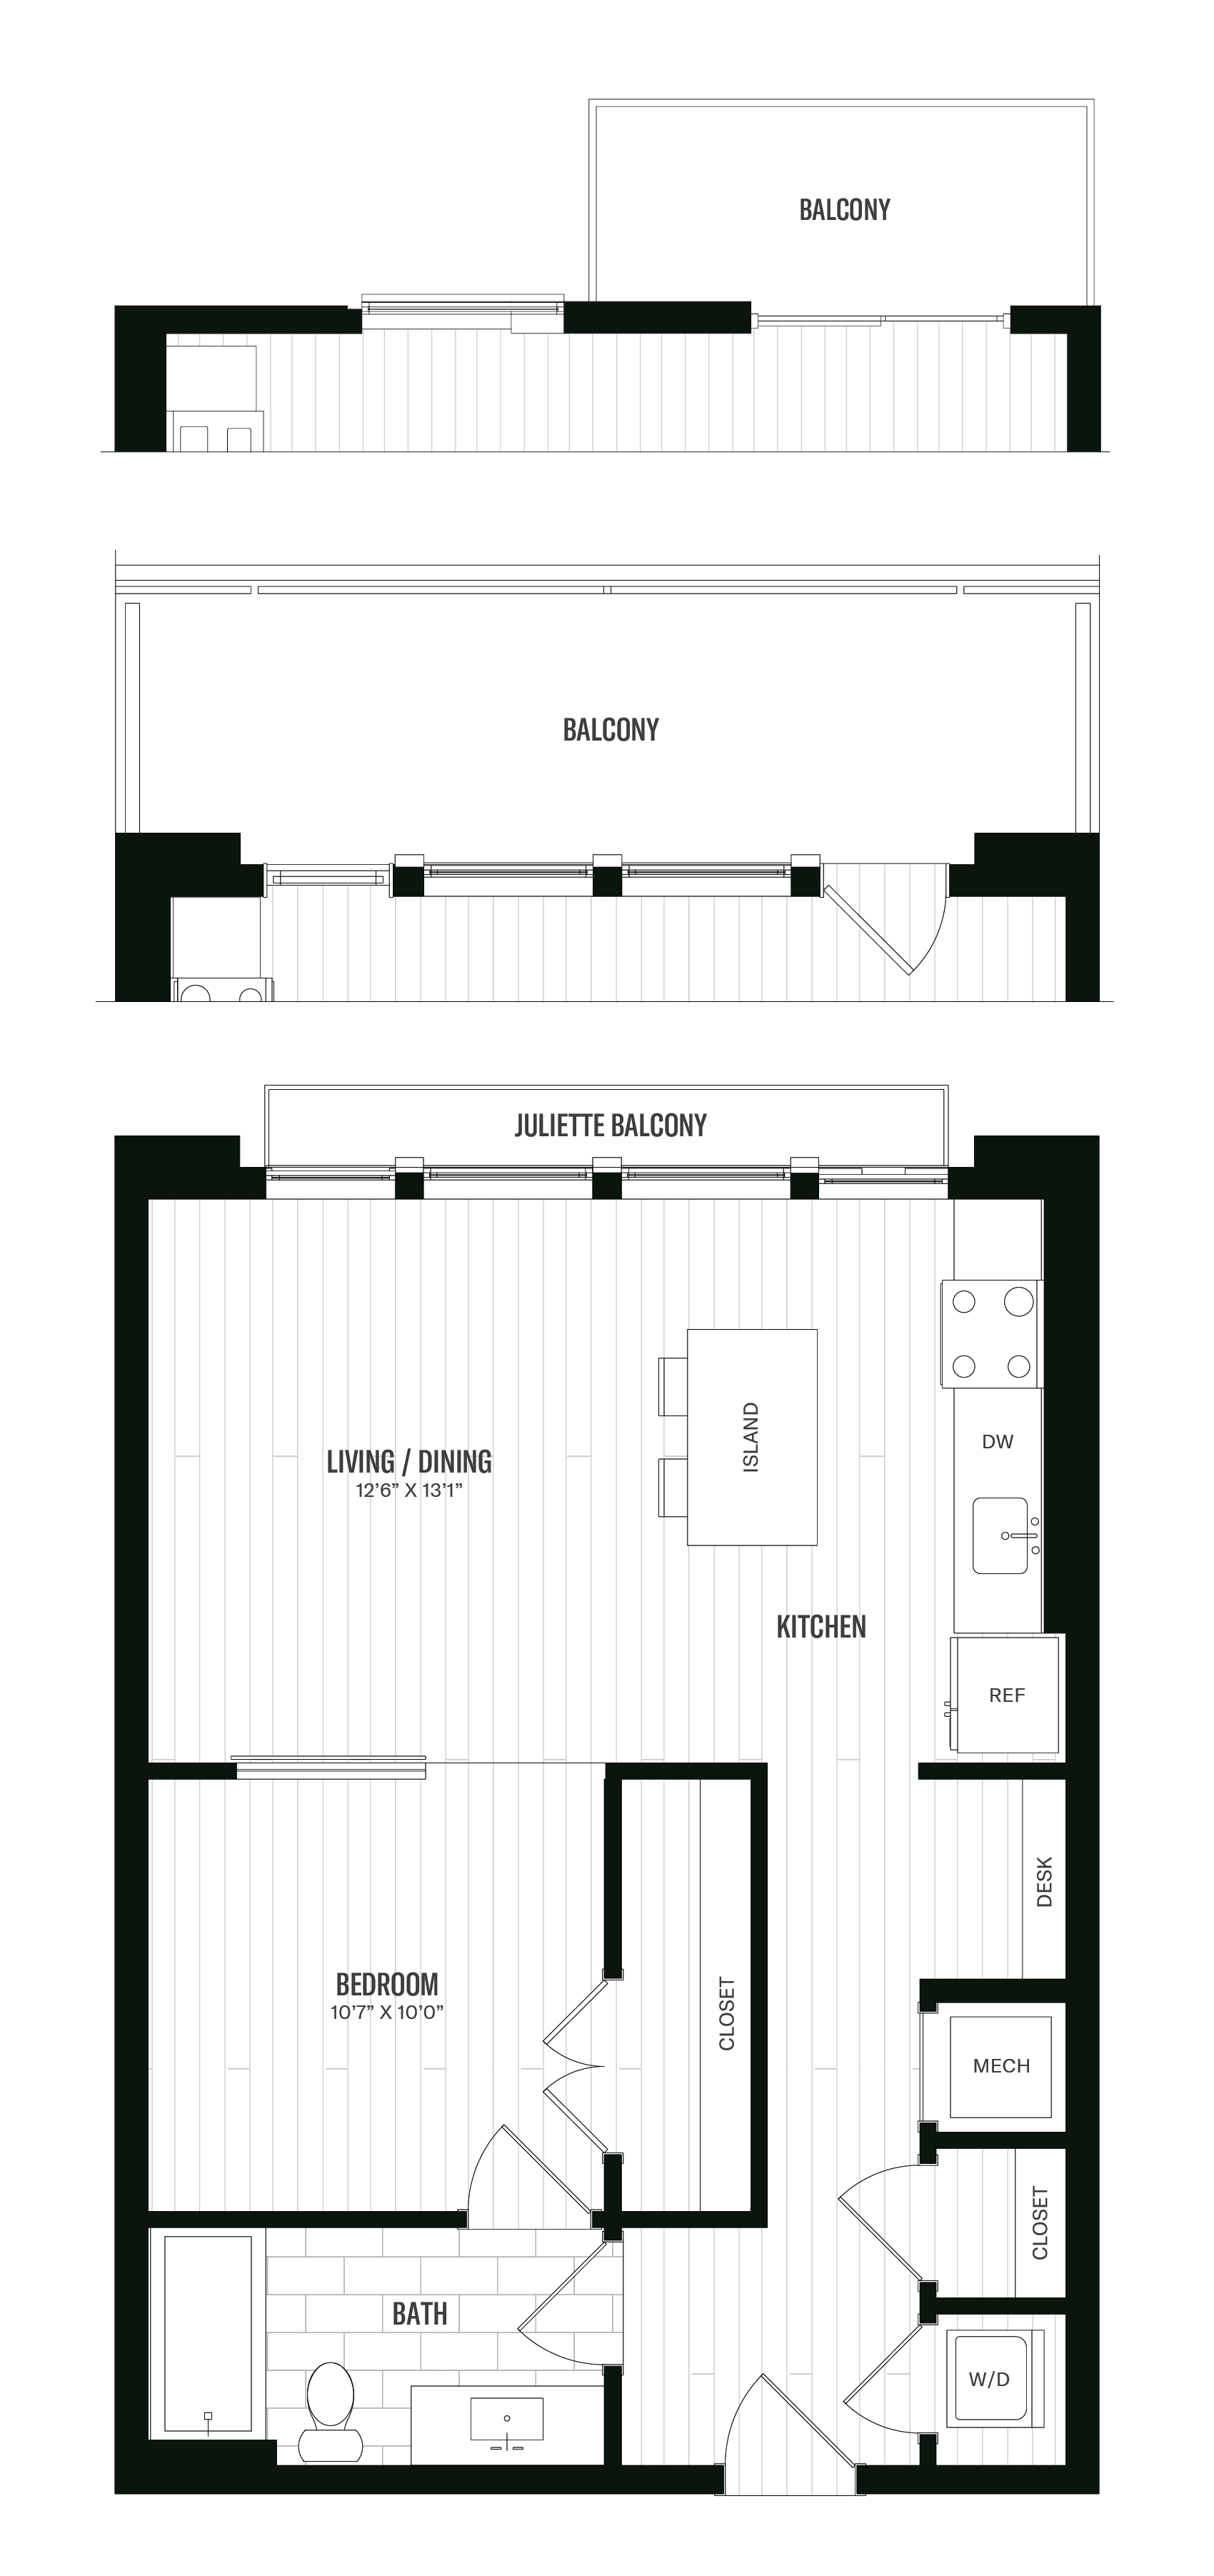 Floorplan image of unit 610